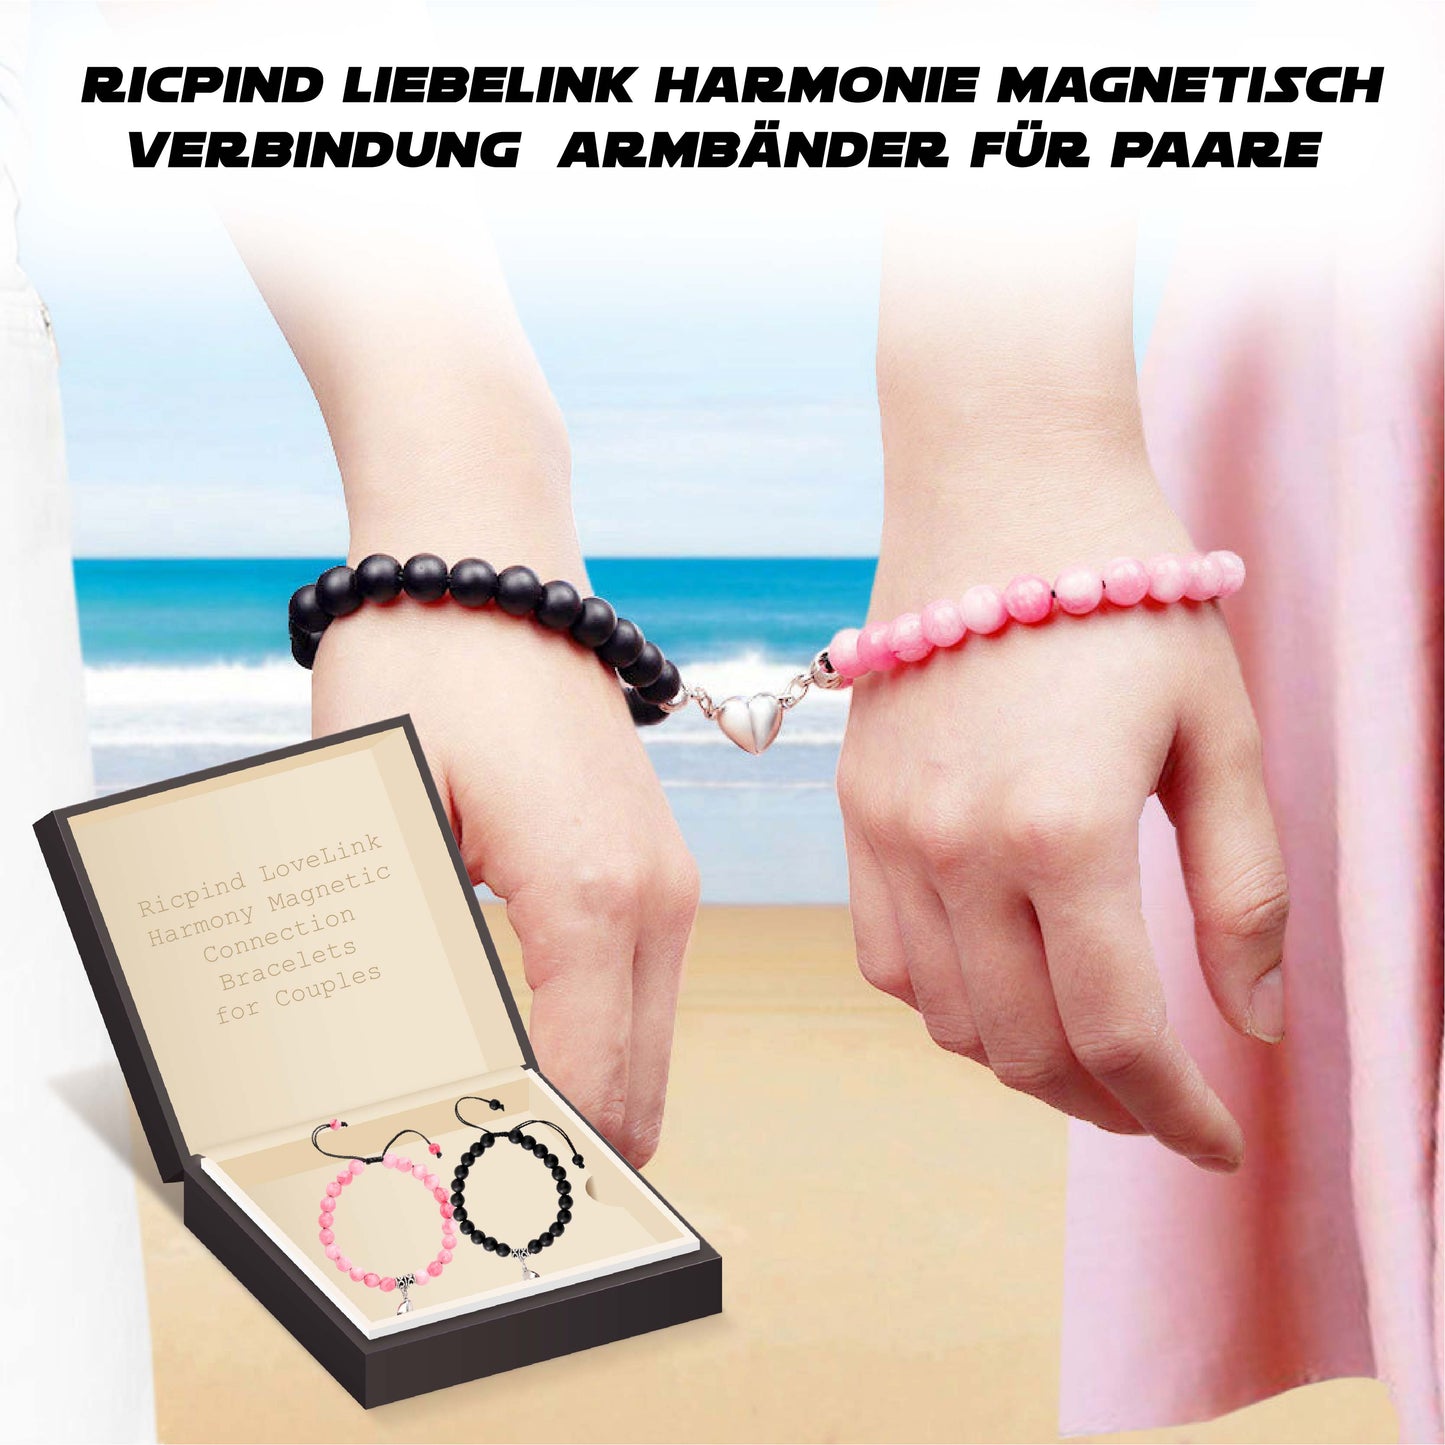 Ricpind LiebeLink Harmonie Magnetisch Verbindung  Armbänder für Paare